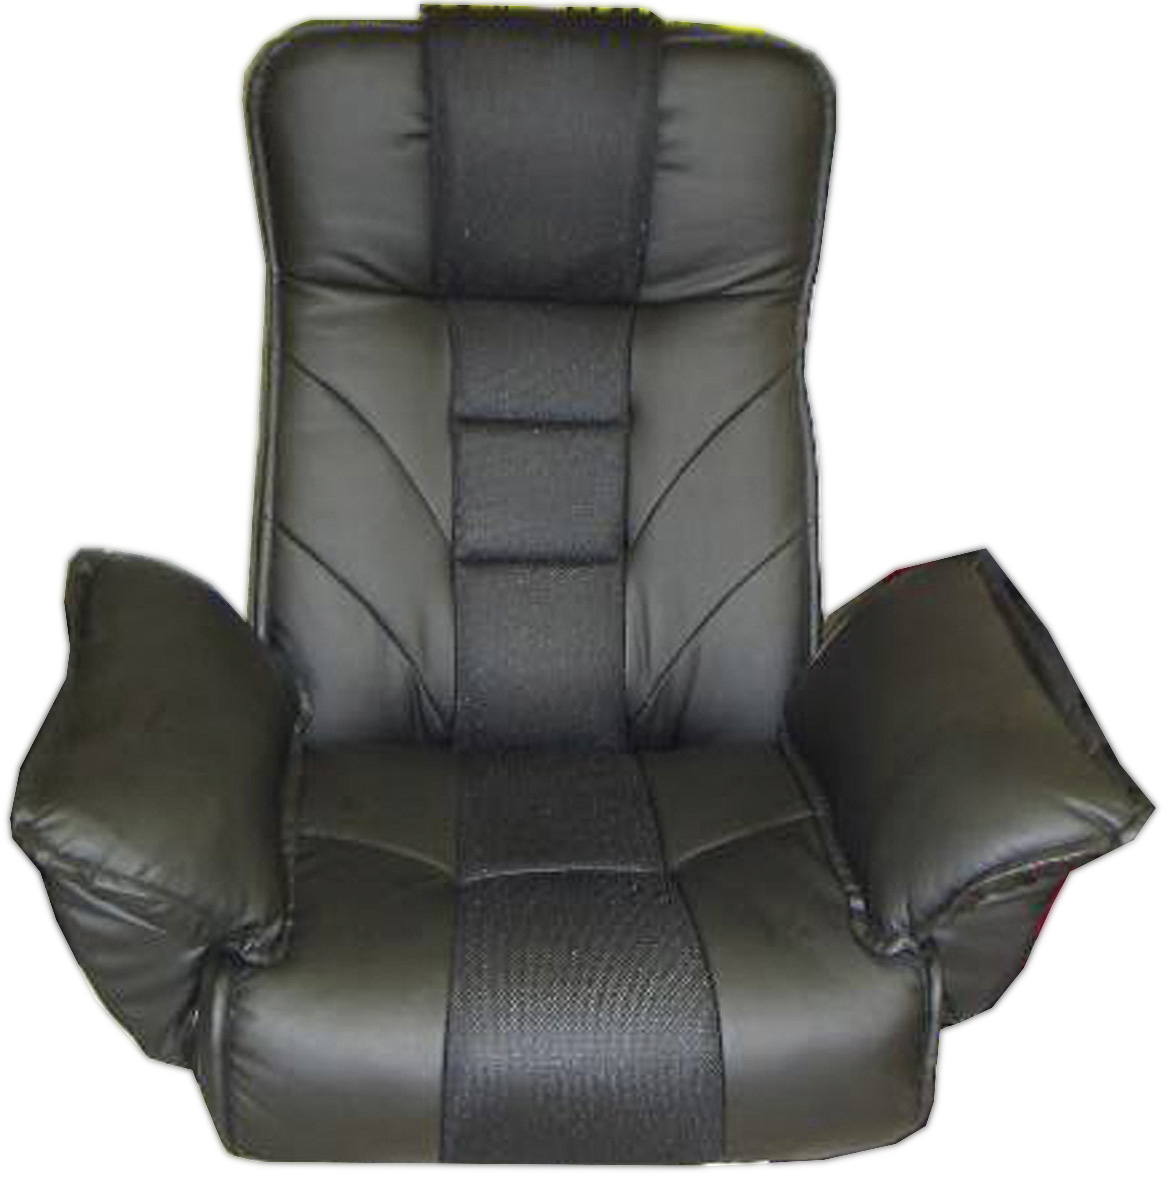 春先取りの （BK） ブラック レバー式14段回転座椅子 - 座椅子